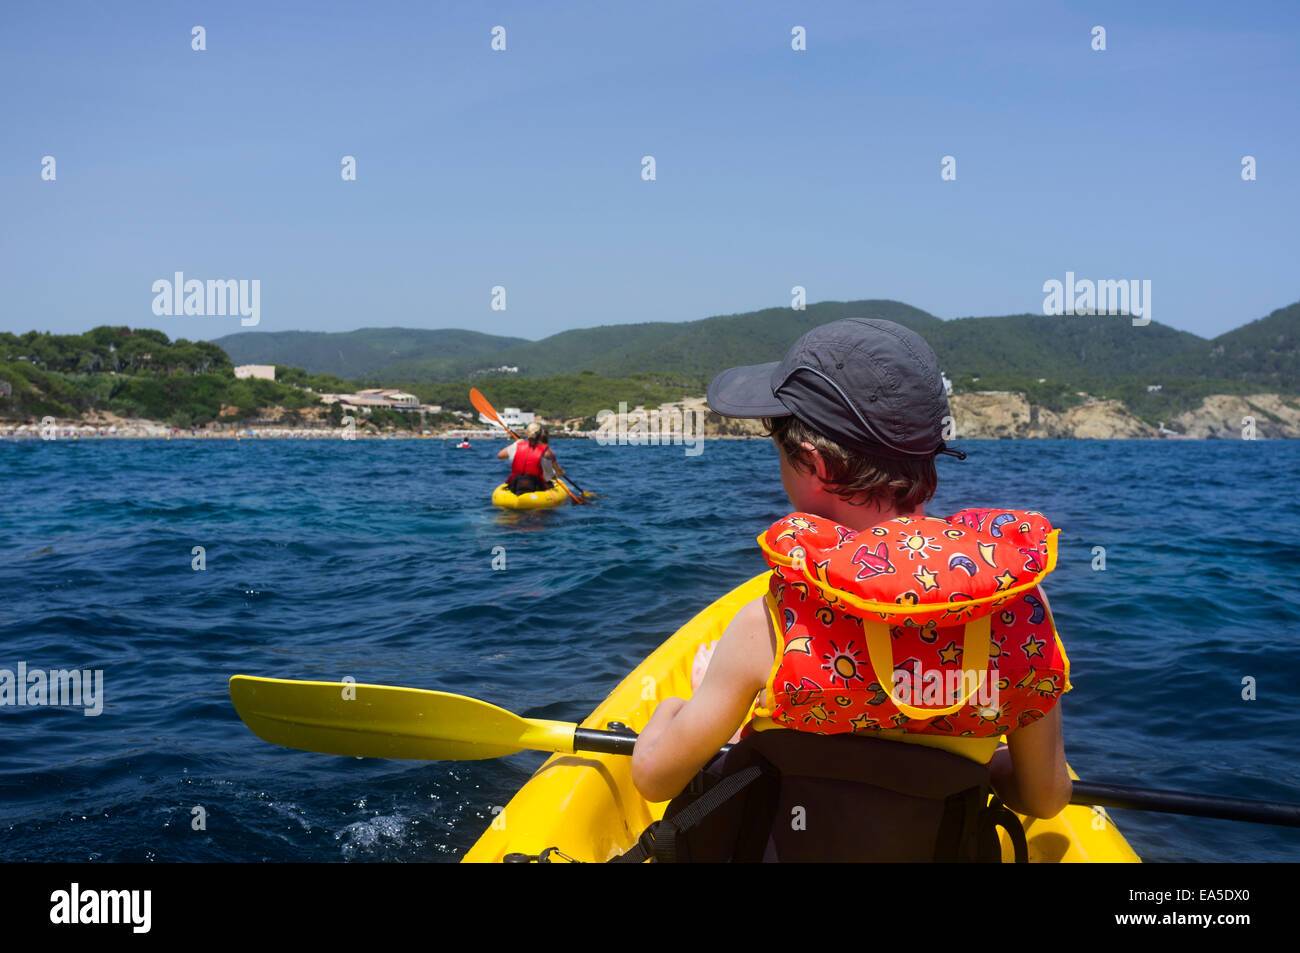 L'Espagne, Îles Baléares, Ibiza, Es Figueral, jeune garçon assis dans un kayak Banque D'Images